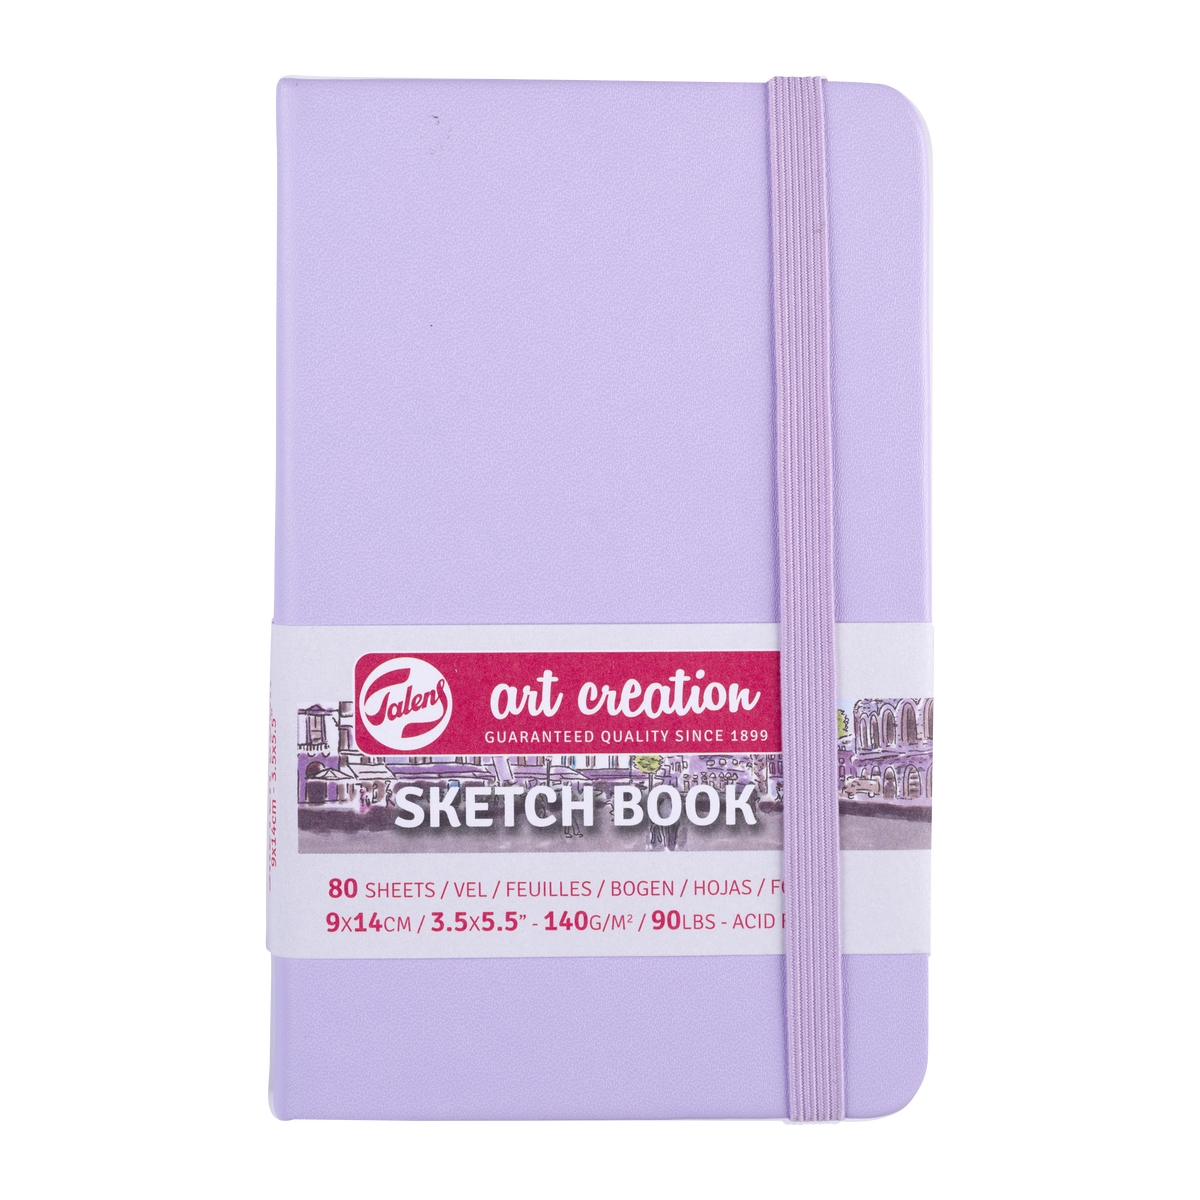 Скетчбук для рисования ARTCREATION 140г/кв.м 90х140мм 80л. фиолетовый пастельный по 390.00 руб от Royal Talens